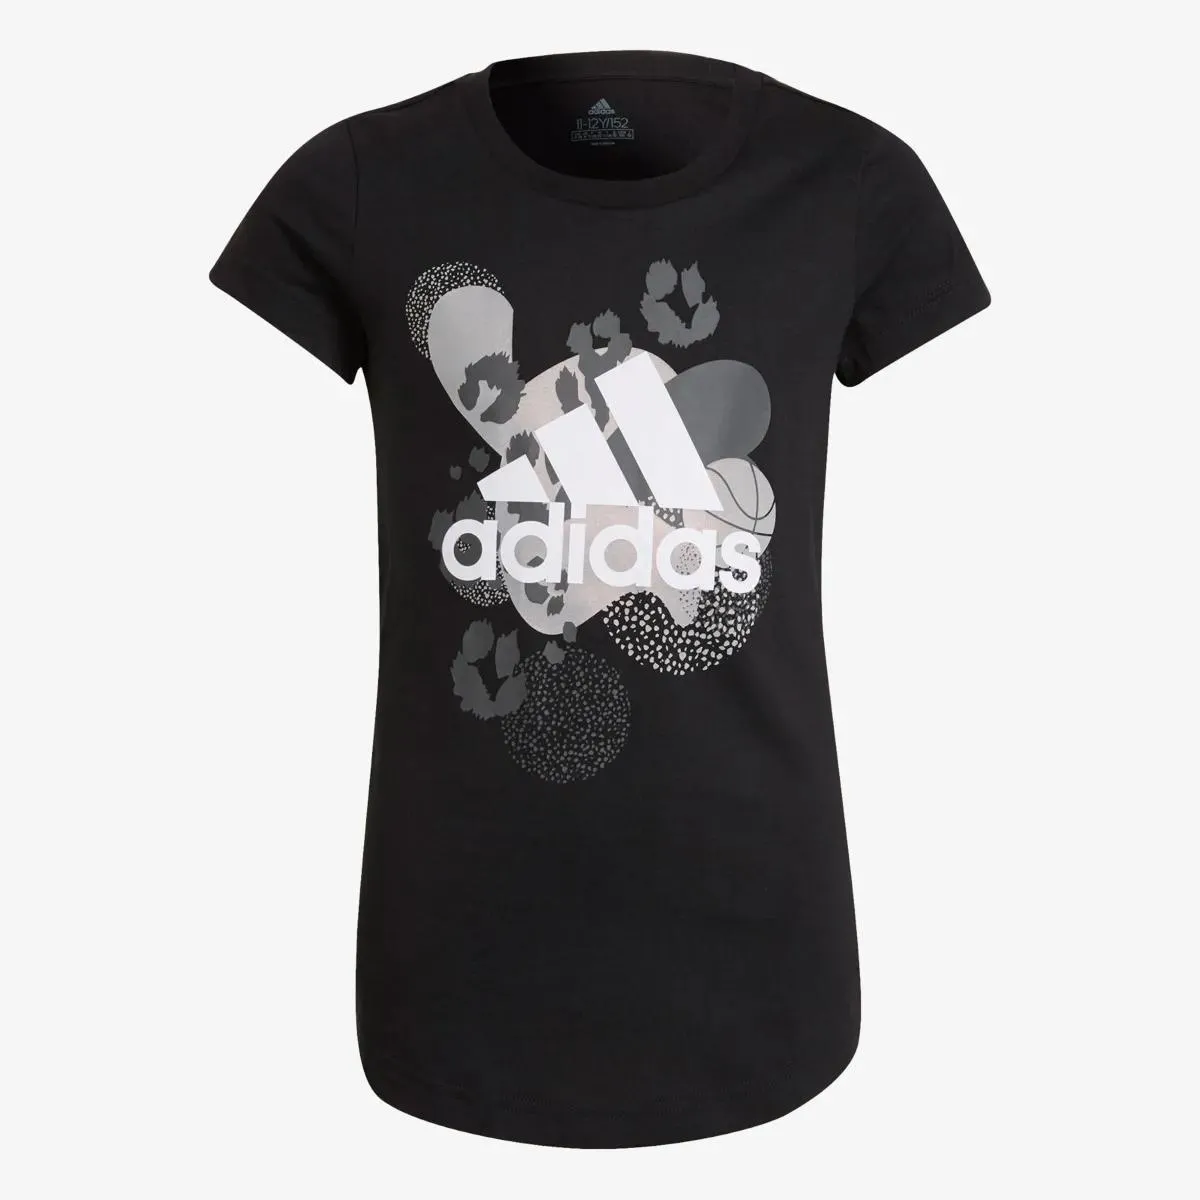 adidas T-shirt Girls Graphic 